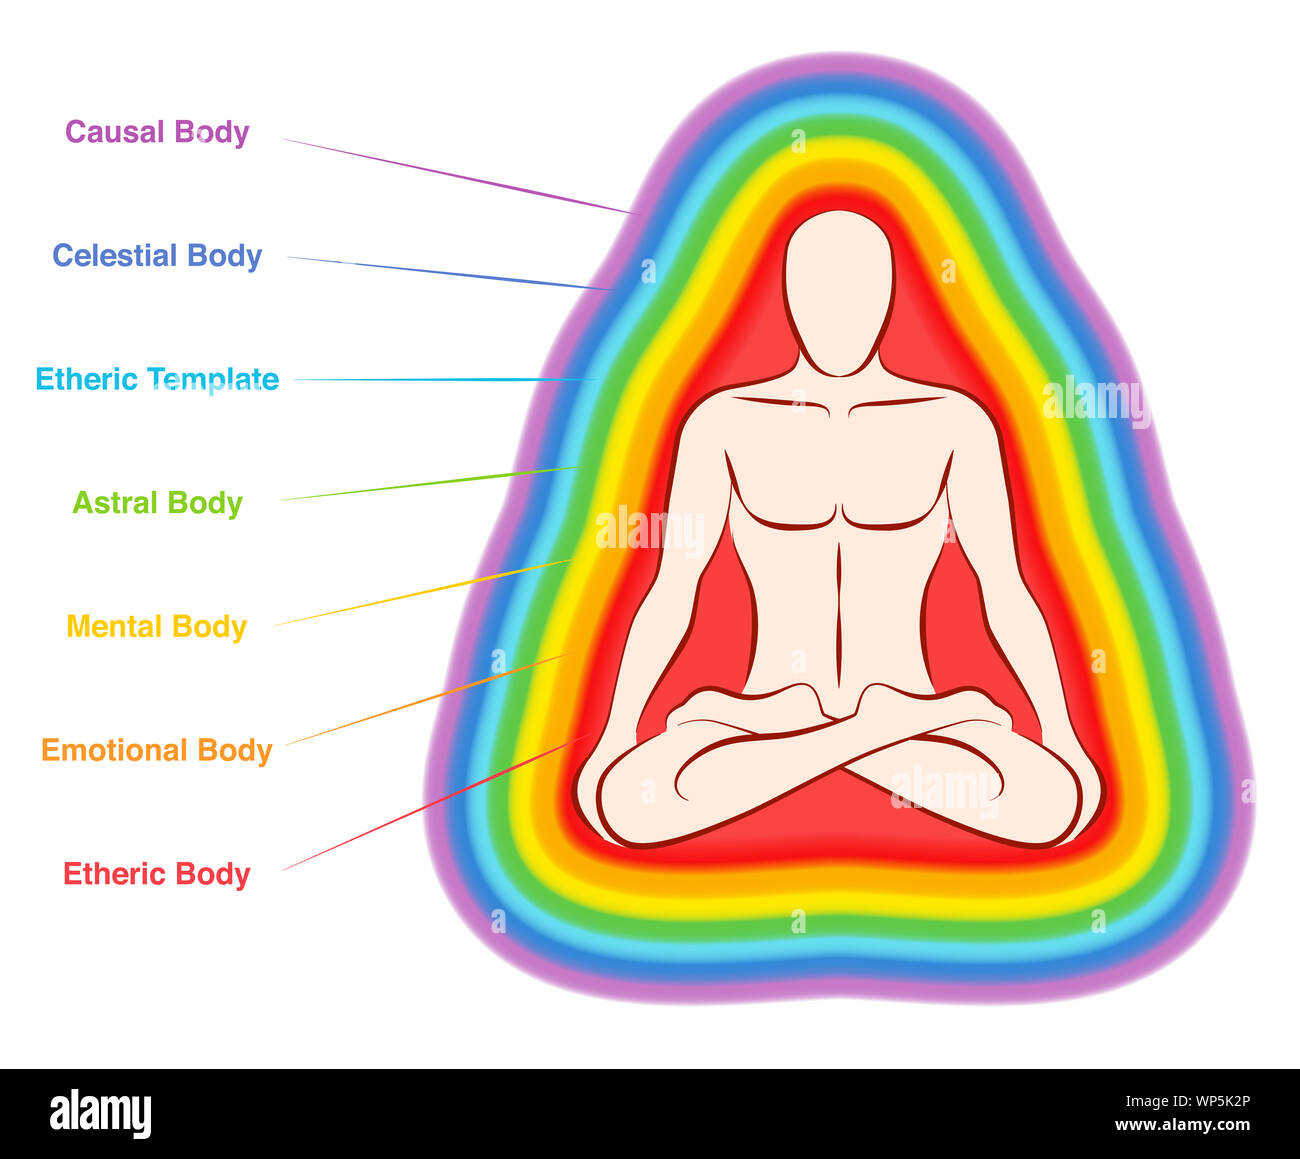 Aura Körper. Regenbogen farbig markierten Schichten von einem männlichen Körper. Ätherischen, emotionalen, mentalen, astral, himmlischen und kausale Schicht. Stockfoto